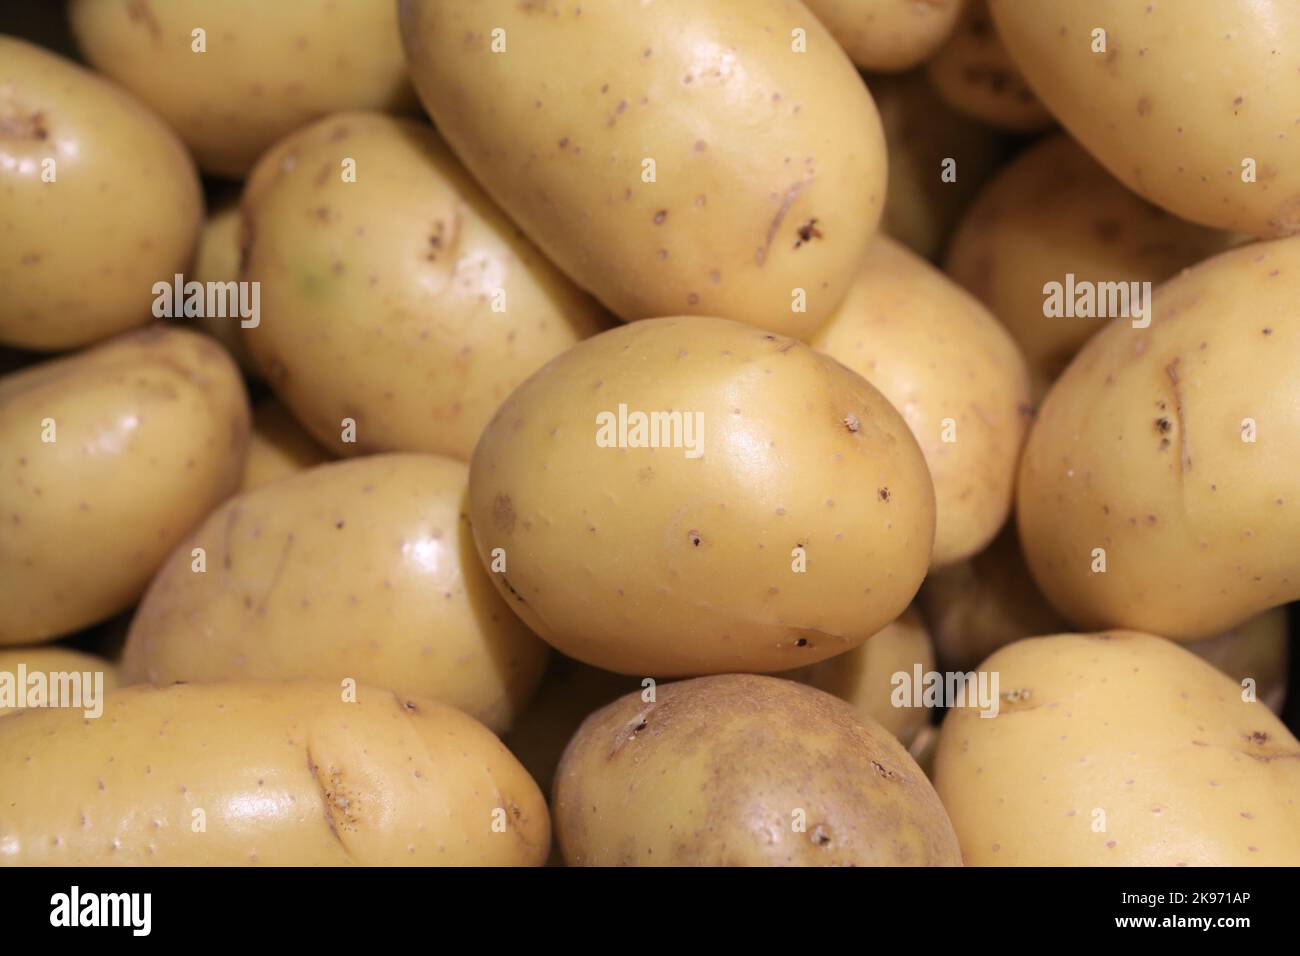 Pommes de terre. Saint-Gervais-les-Bains. Haute-Savoie. Auvergne-Rhône-Alpes. France. Europe. Stock Photo